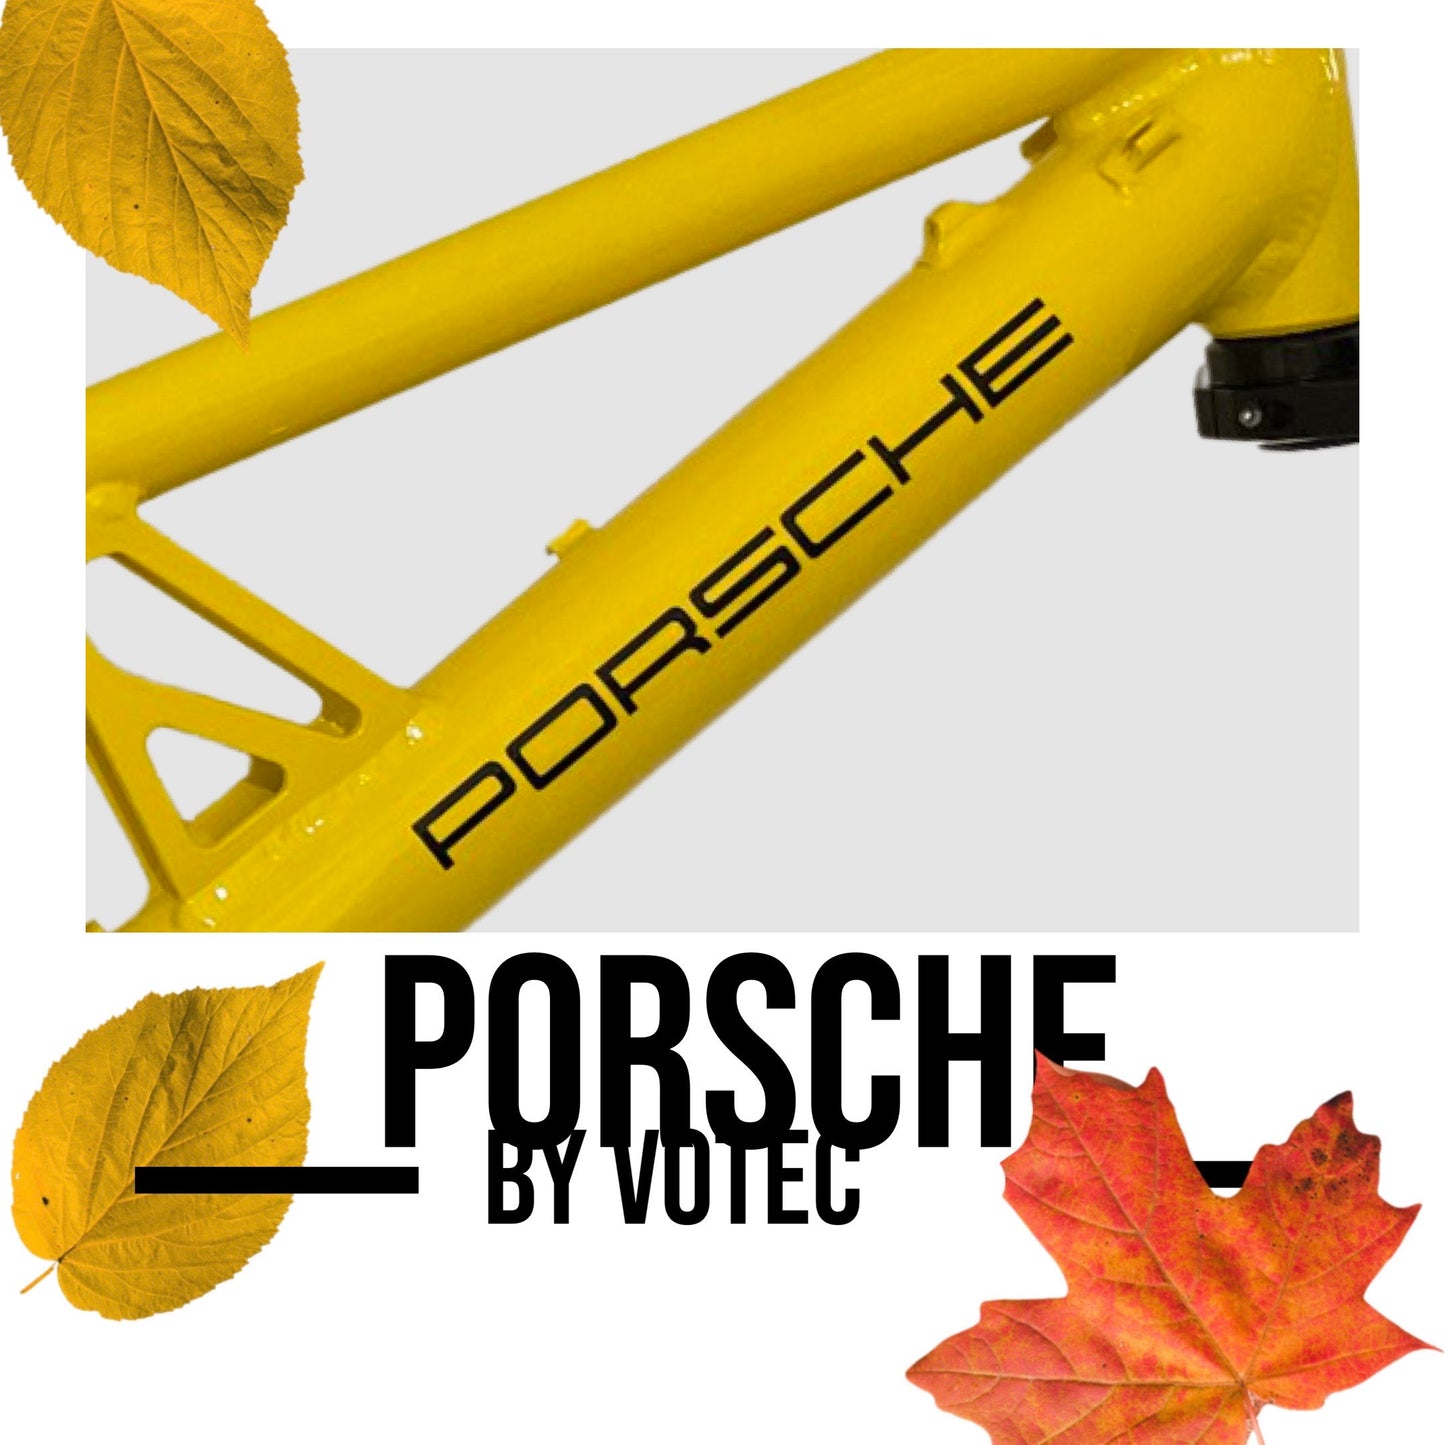 Full suspension frame Porsche FS from 1999-2001 26inc handmade by Votec